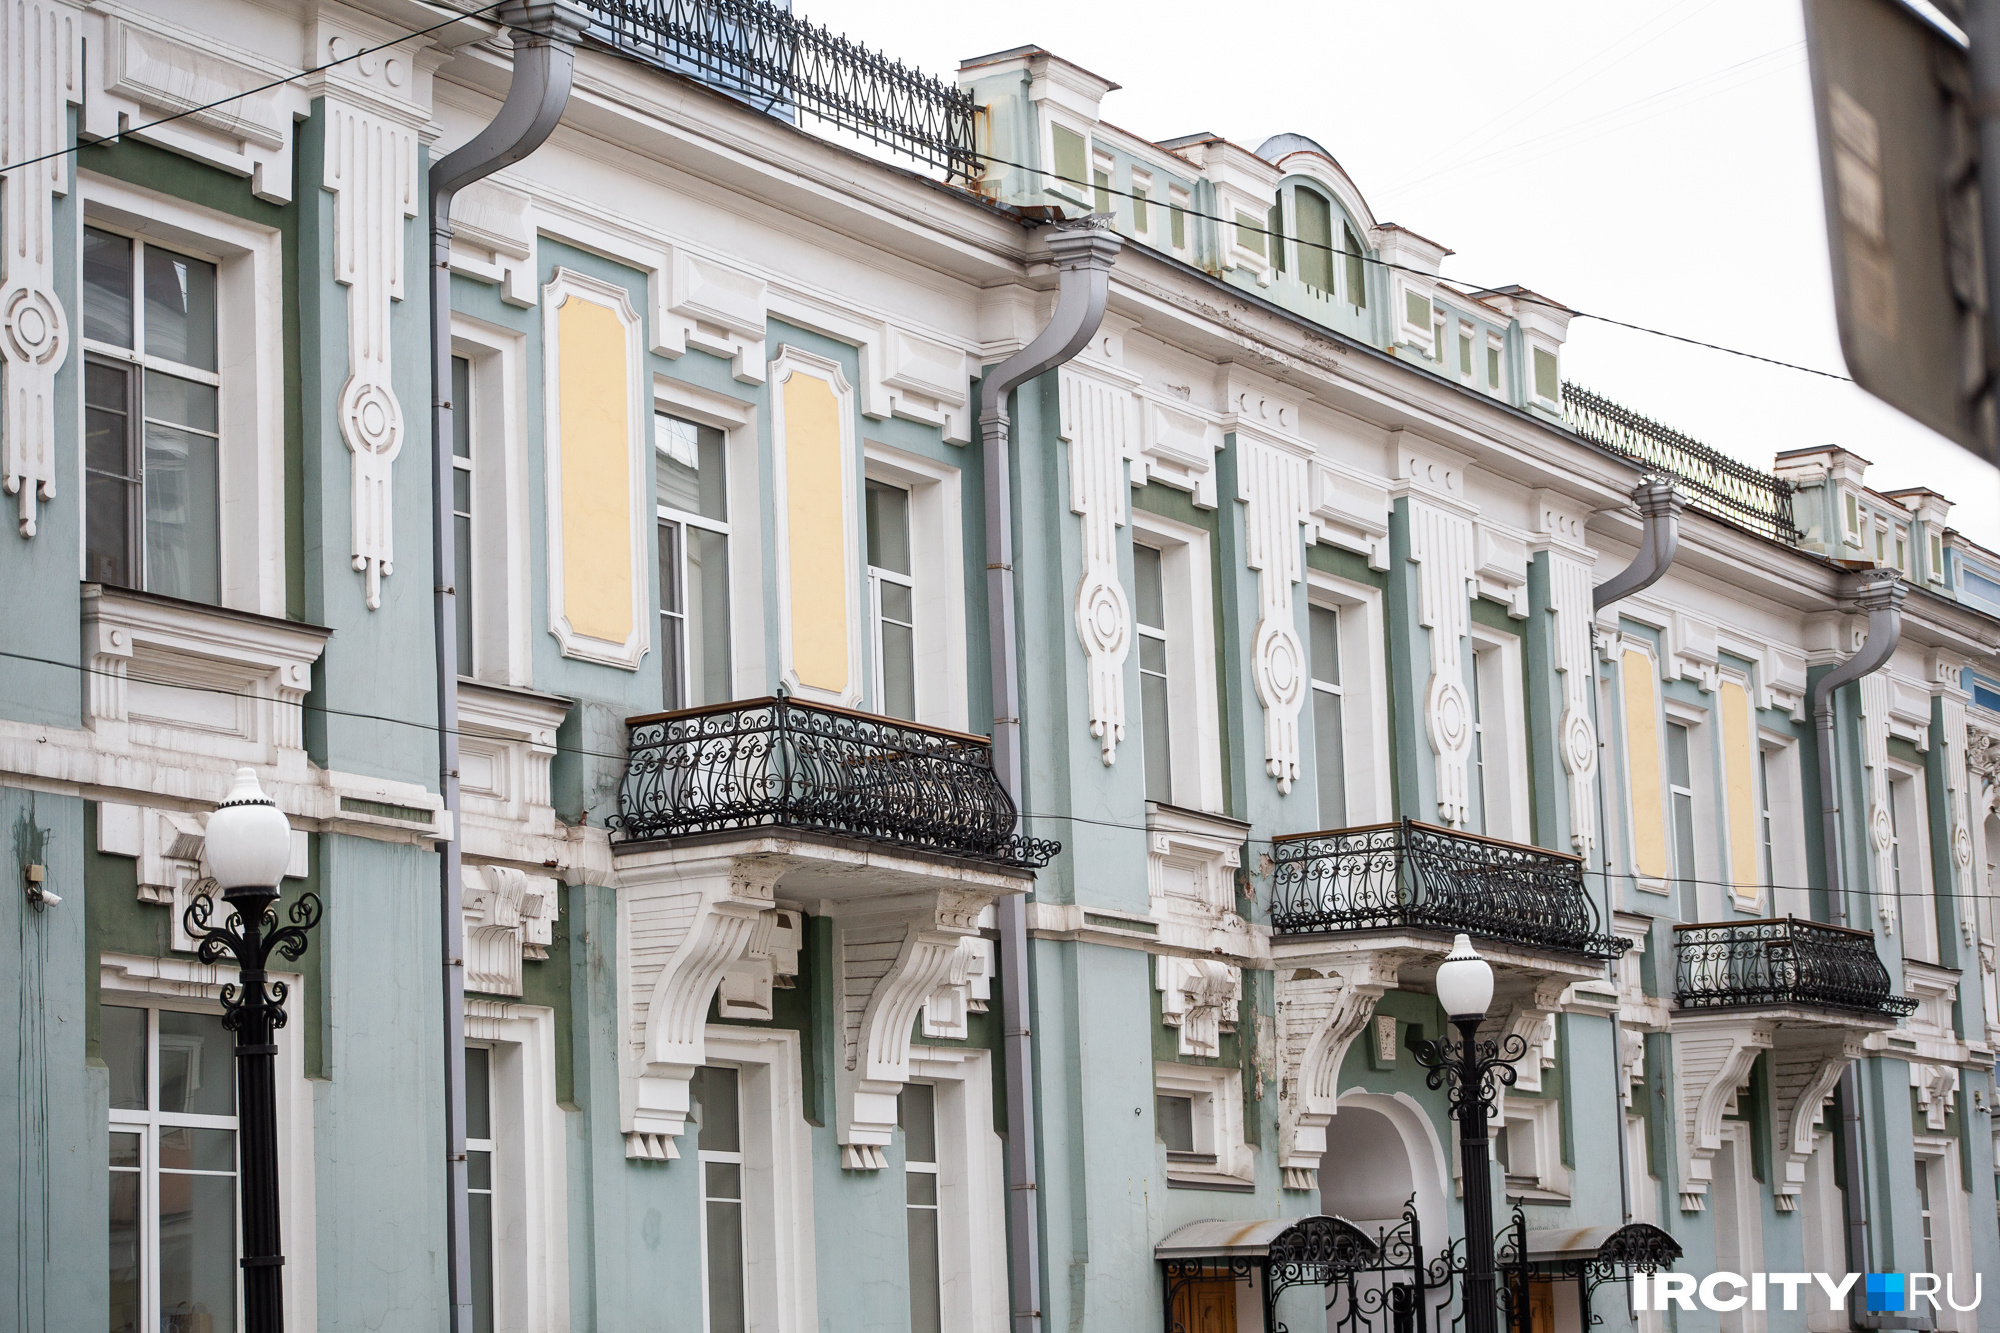 Этим зданием в середине XIX века владел иркутский купец первой гильдии Яков Домбровский